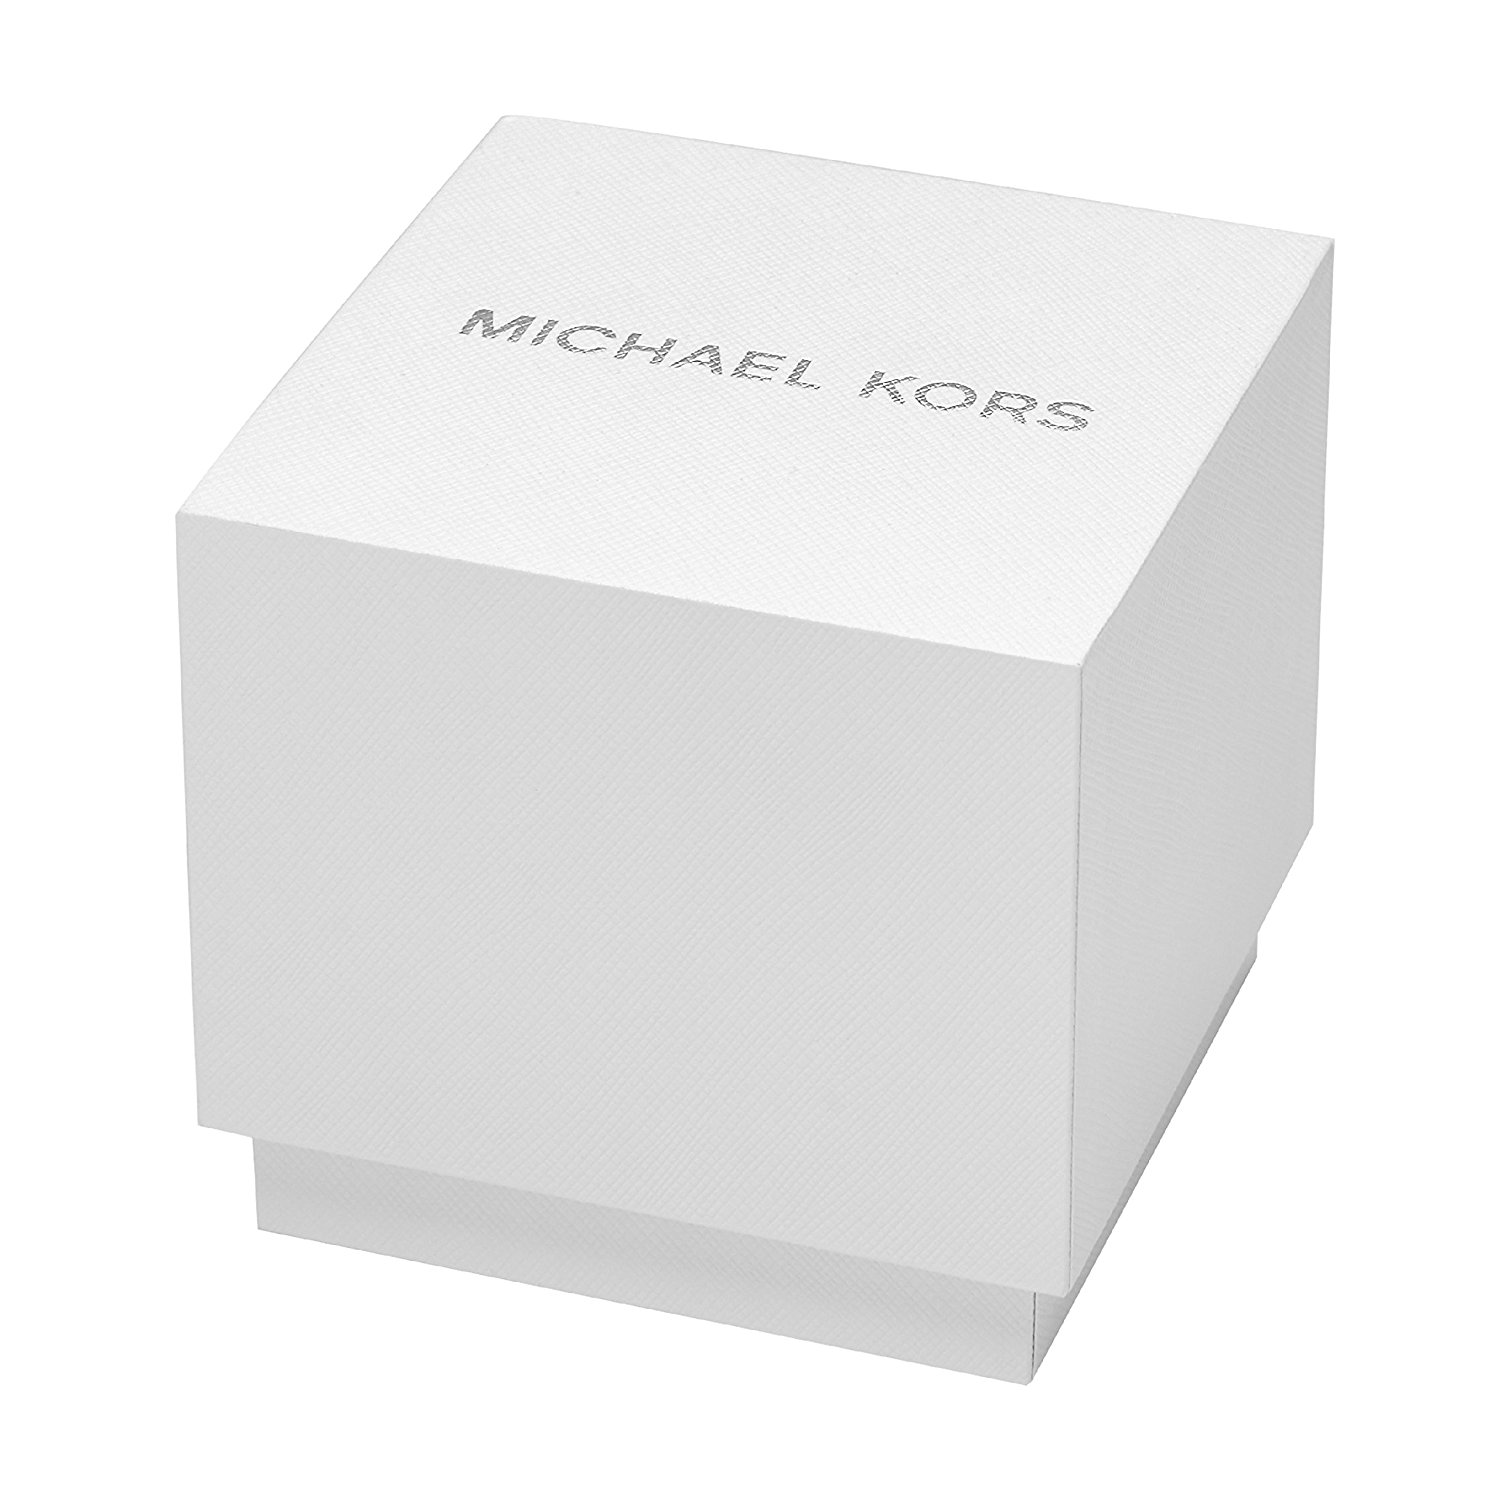 Michael Kors | Lexington Collection | MK8494